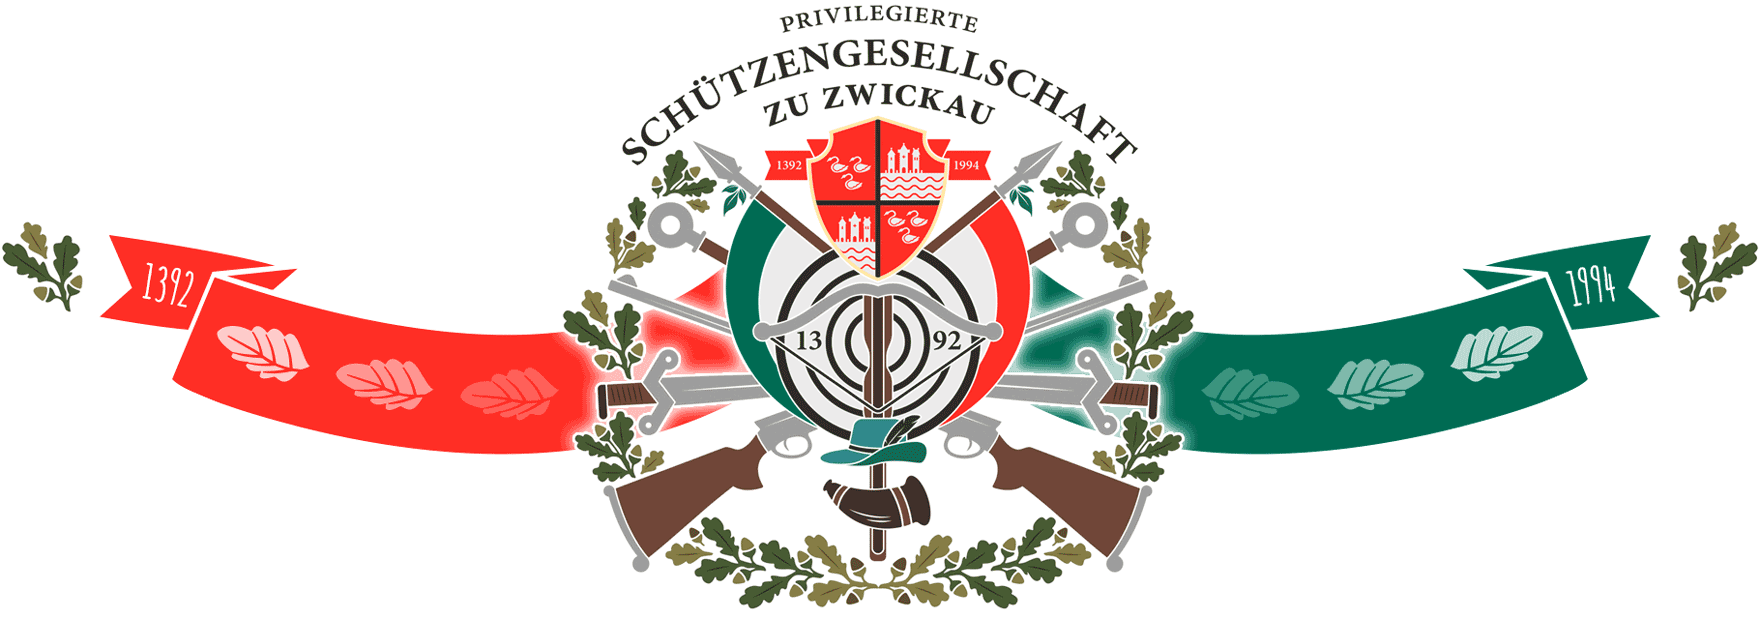 Banner mit historischem Logo der Schützengesellschaft